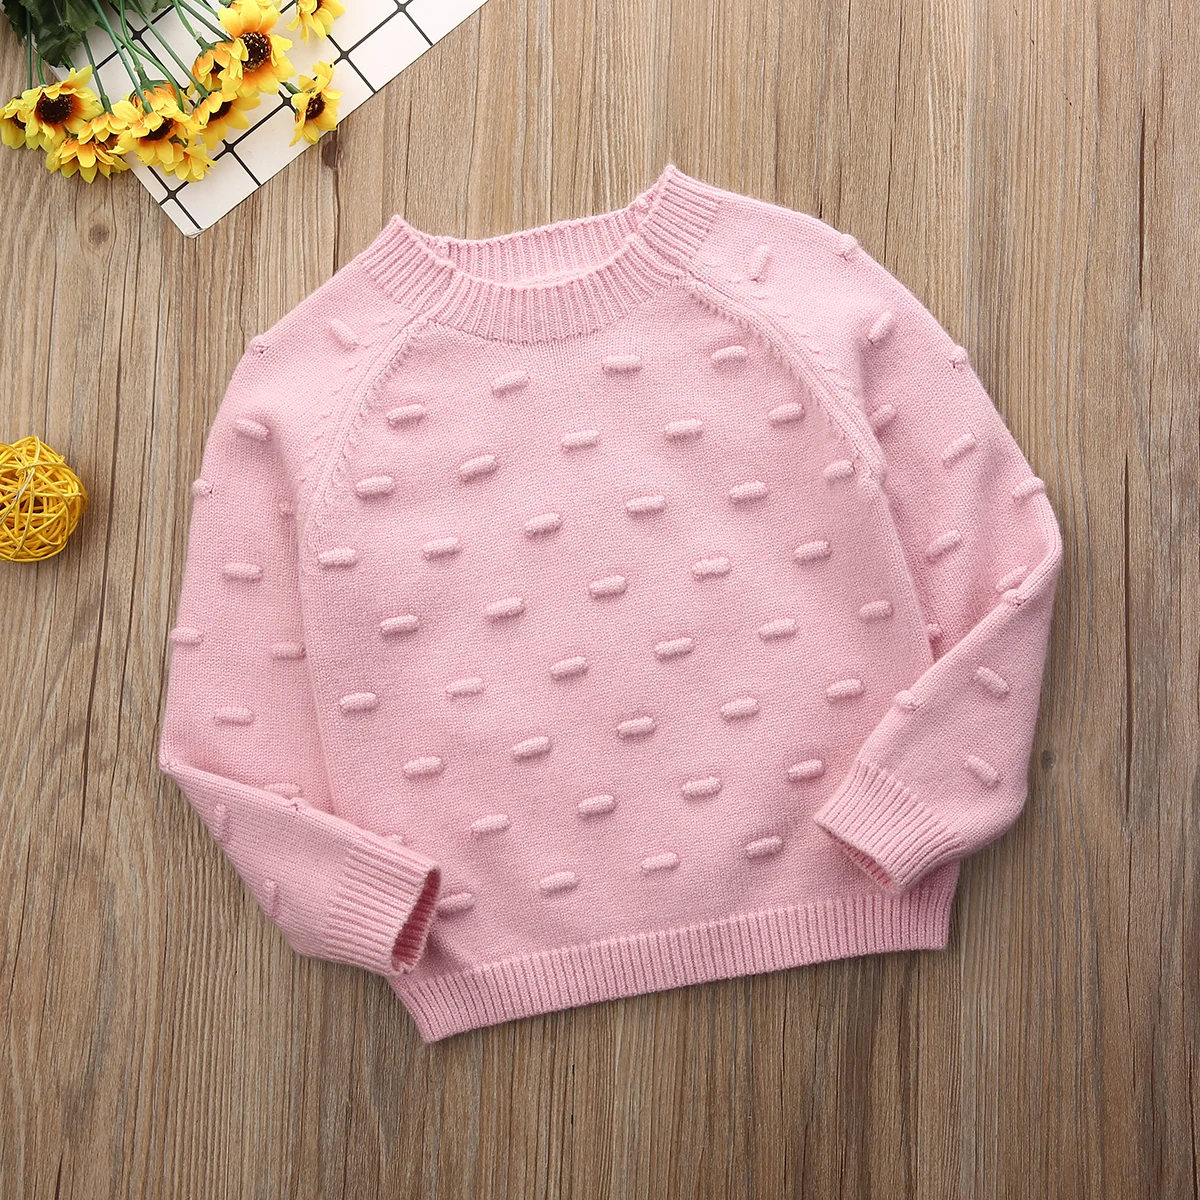 Осенние свитера для маленьких девочек, Детский Зимний вязаный свитер, Однотонный свитер для девочек, зимняя одежда для маленьких девочек